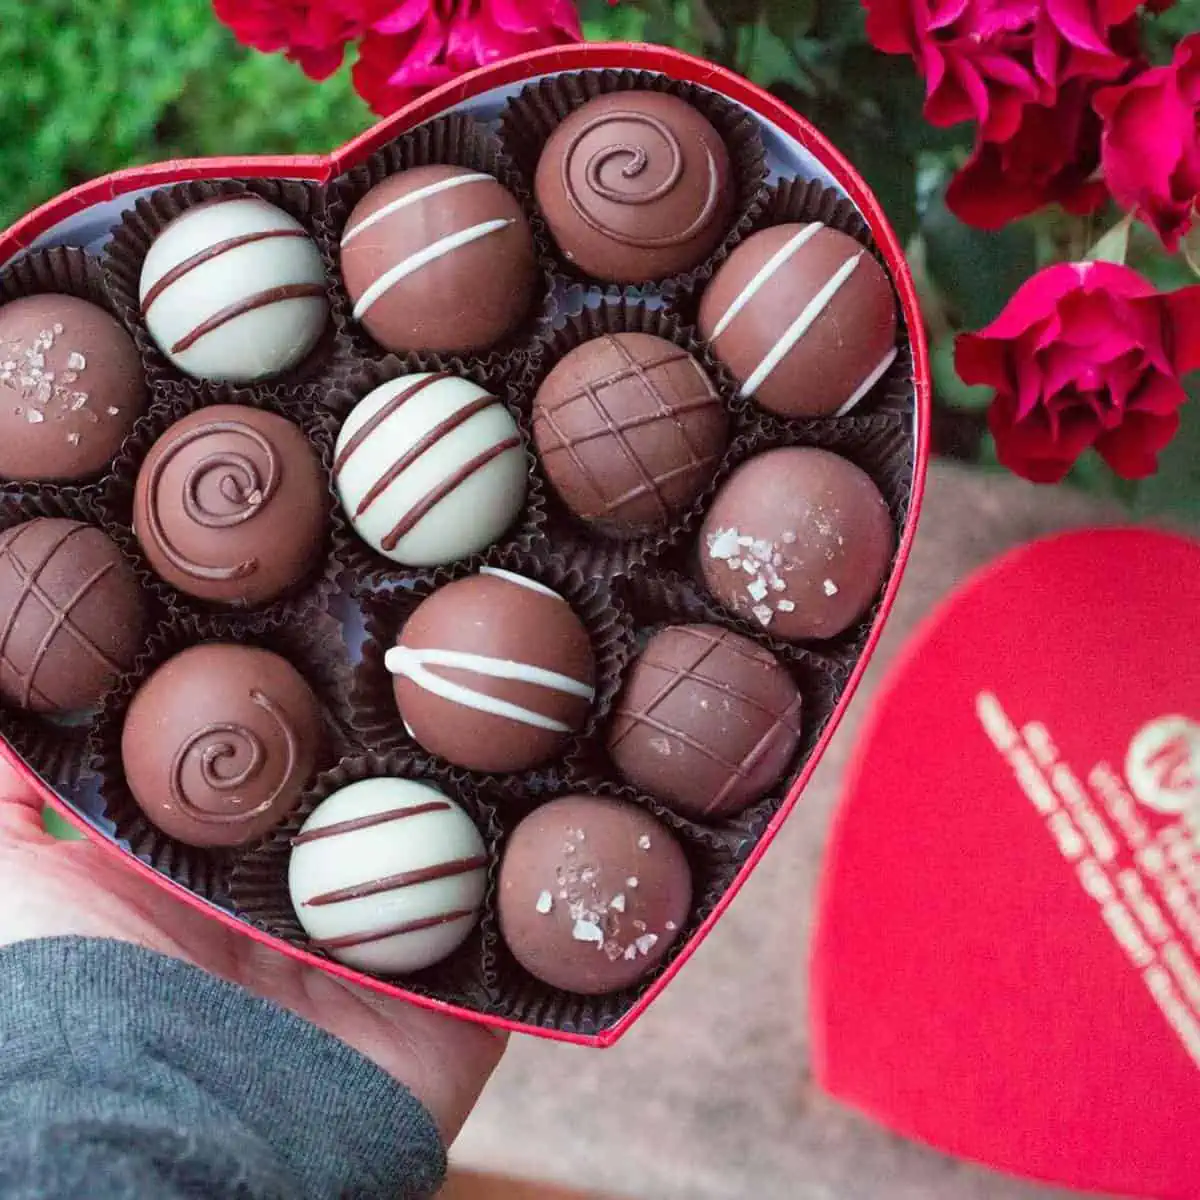 Heart shaped box of vegan chocolate truffles with white chocolate, dark chocolate, and plant based milk chocolate.